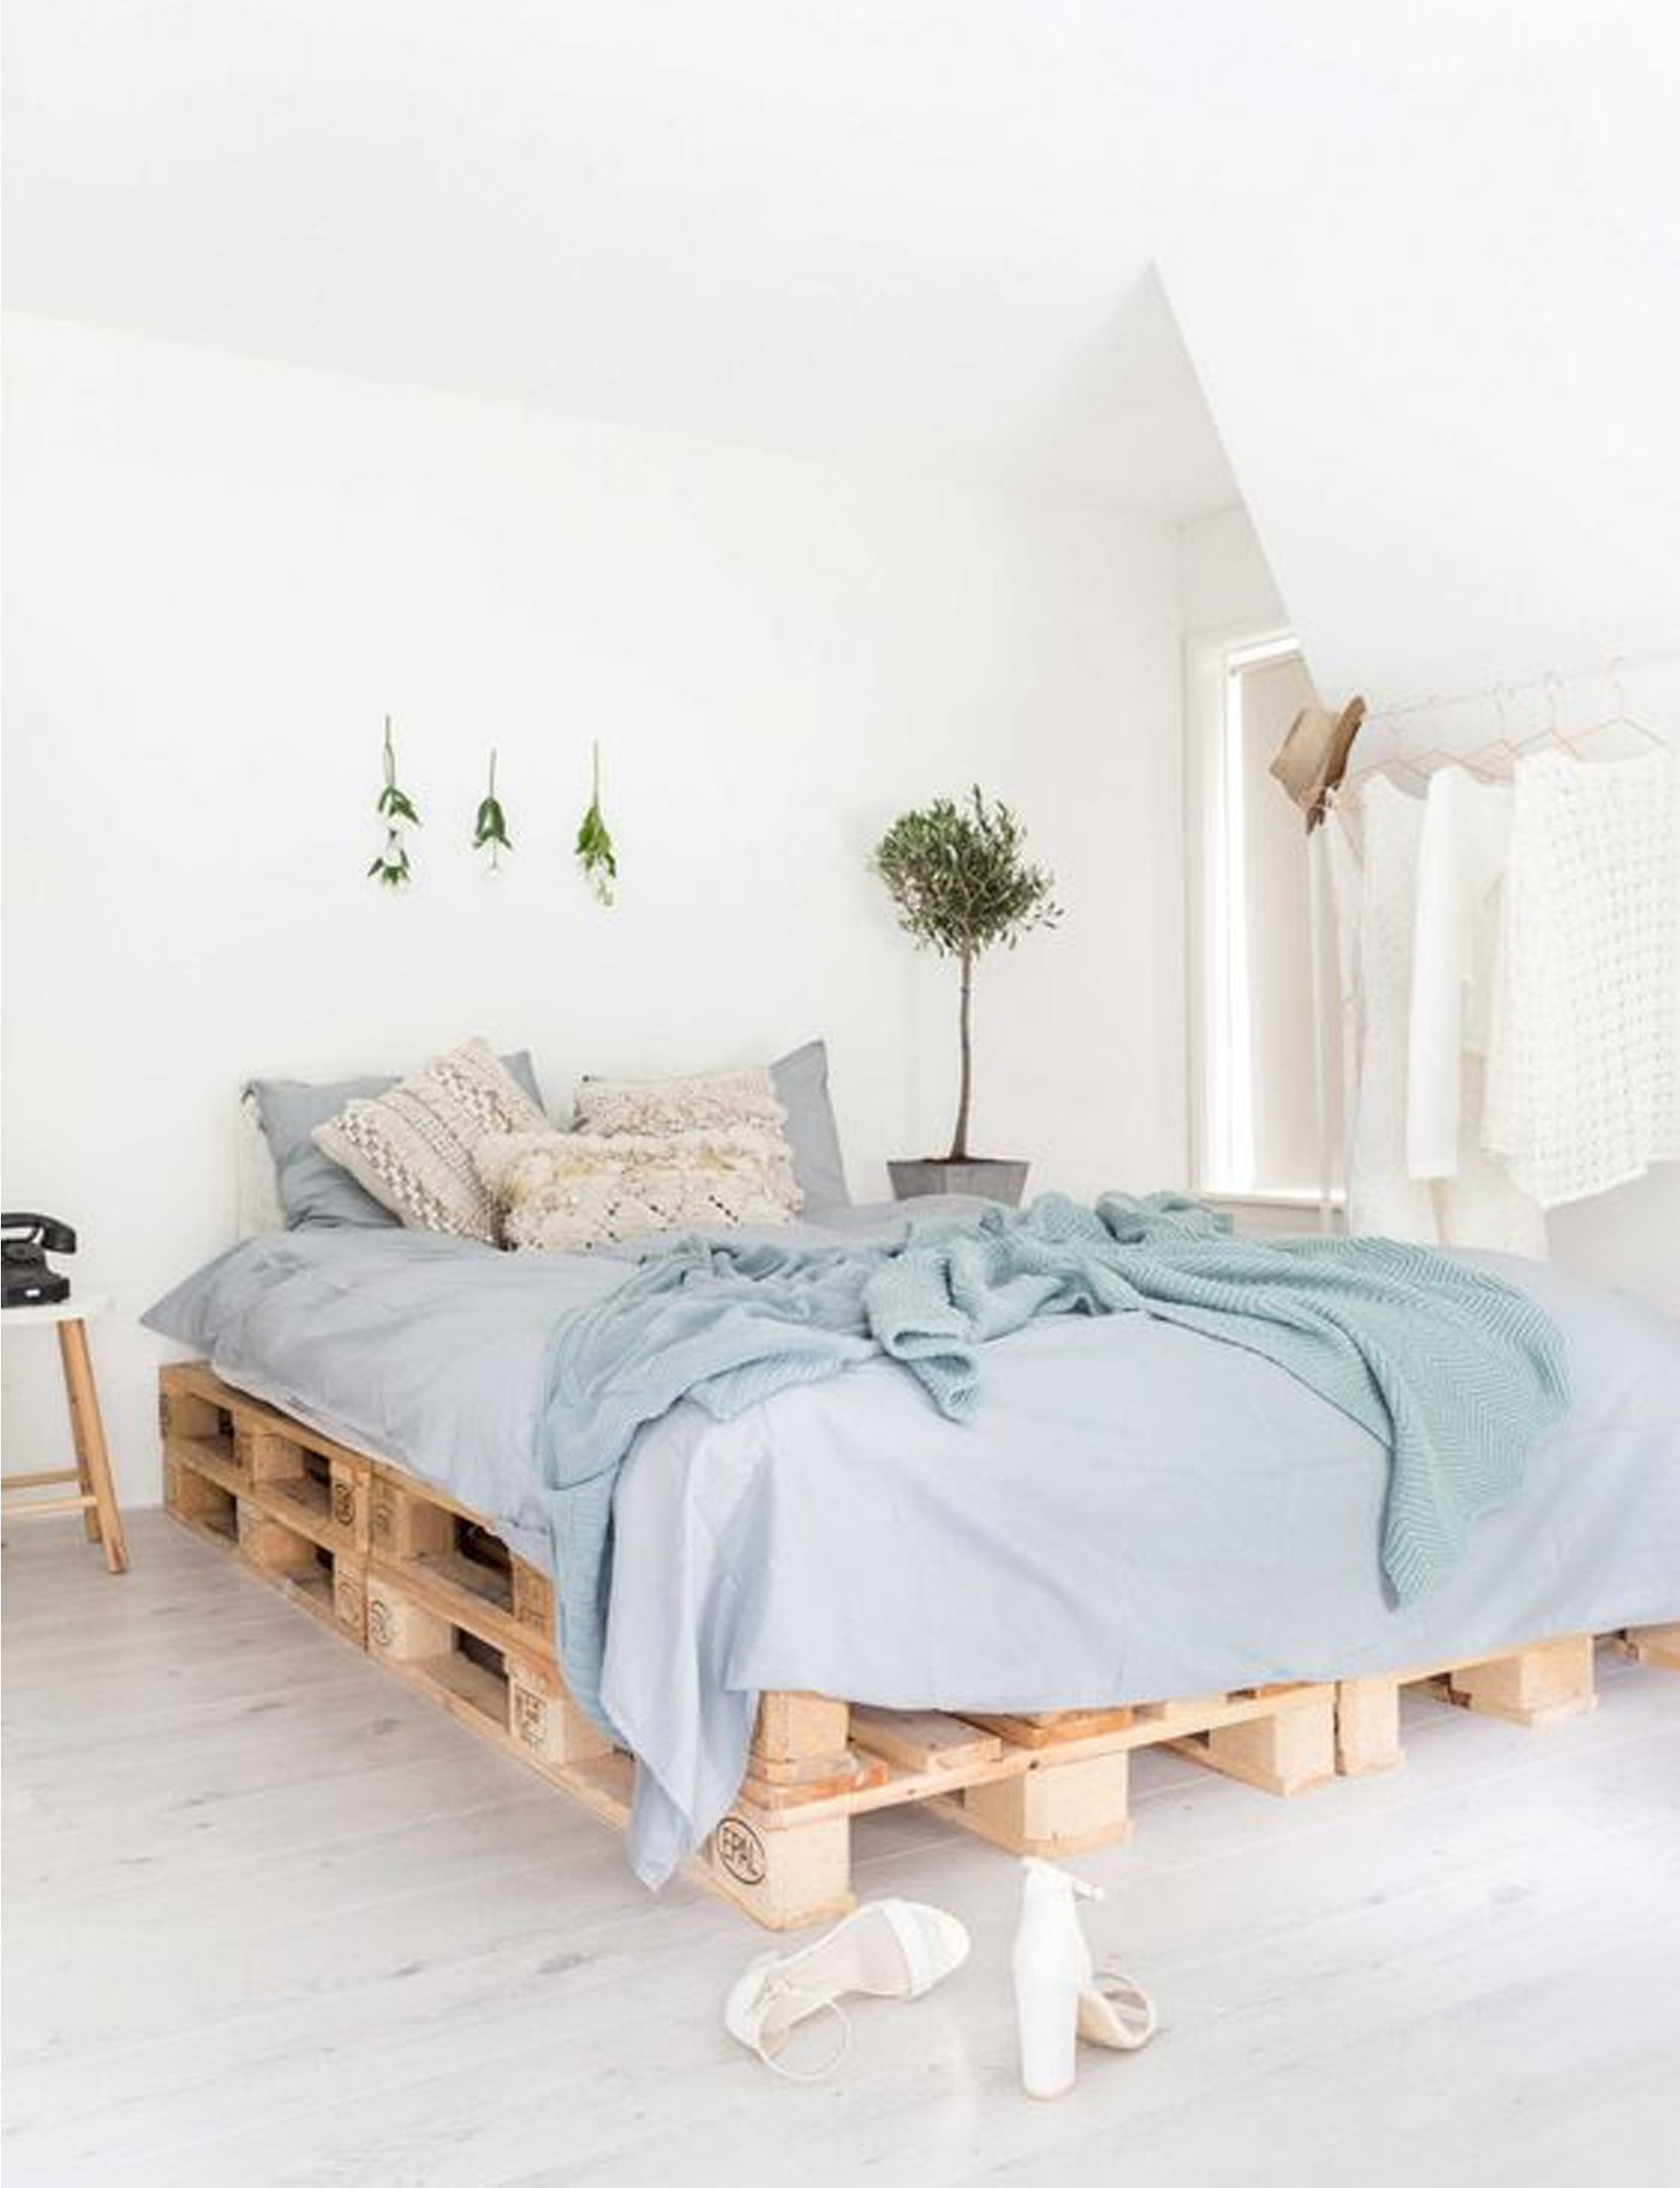 Thư thái, yên bình và tĩnh tại là những gì có thể miêu tả về phòng ngủ của nữ chủ nhân yêu phong cách thanh lịch. Sự nhẹ nhàng này không chỉ đến từ màu sắc trắng và xanh lam êm dịu mà còn nhờ vào chiếc giường gỗ pallet mộc mạc, nhỏ gọn.